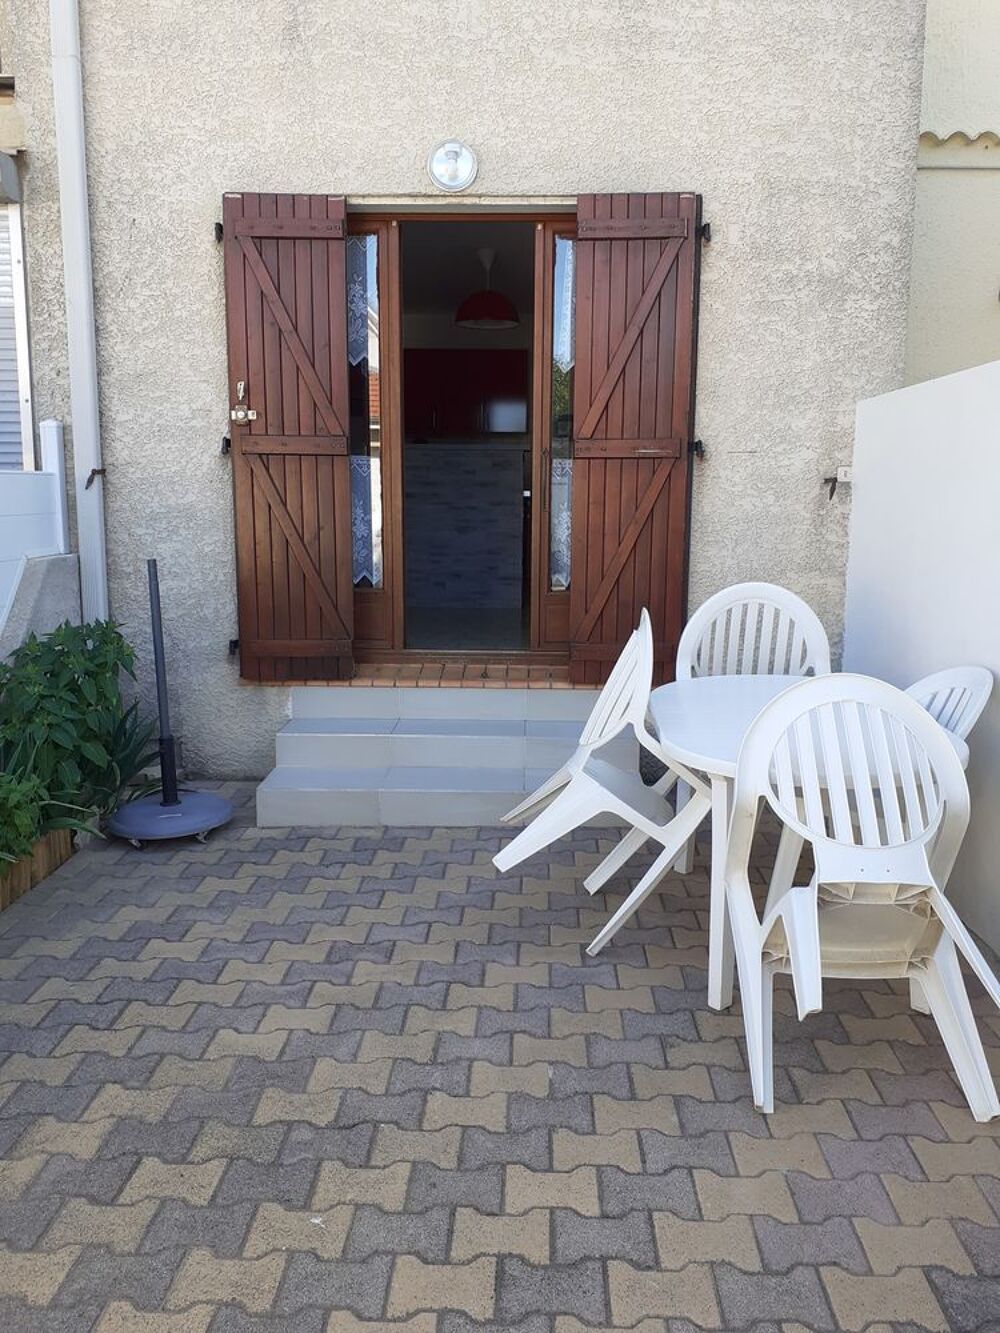   Appartement en rez-de-chausse avec cours Languedoc-Roussillon, Valras-Plage (34350)